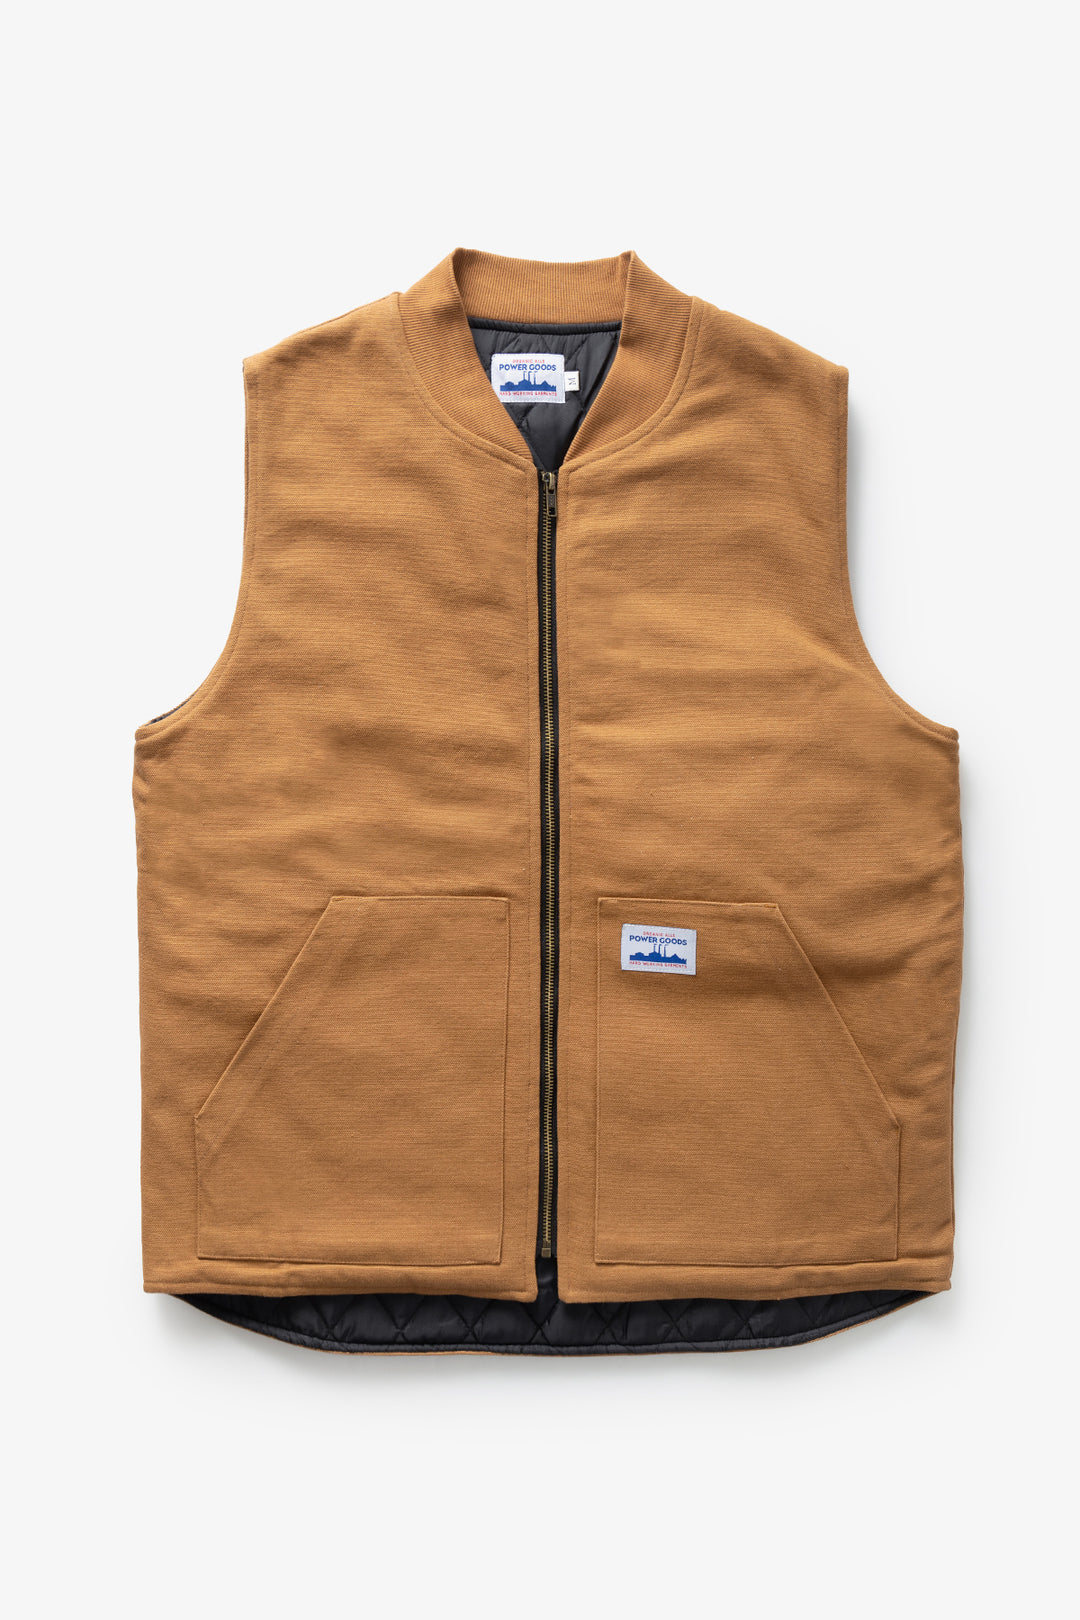 Power Goods - Canvas Work Vest - Brown